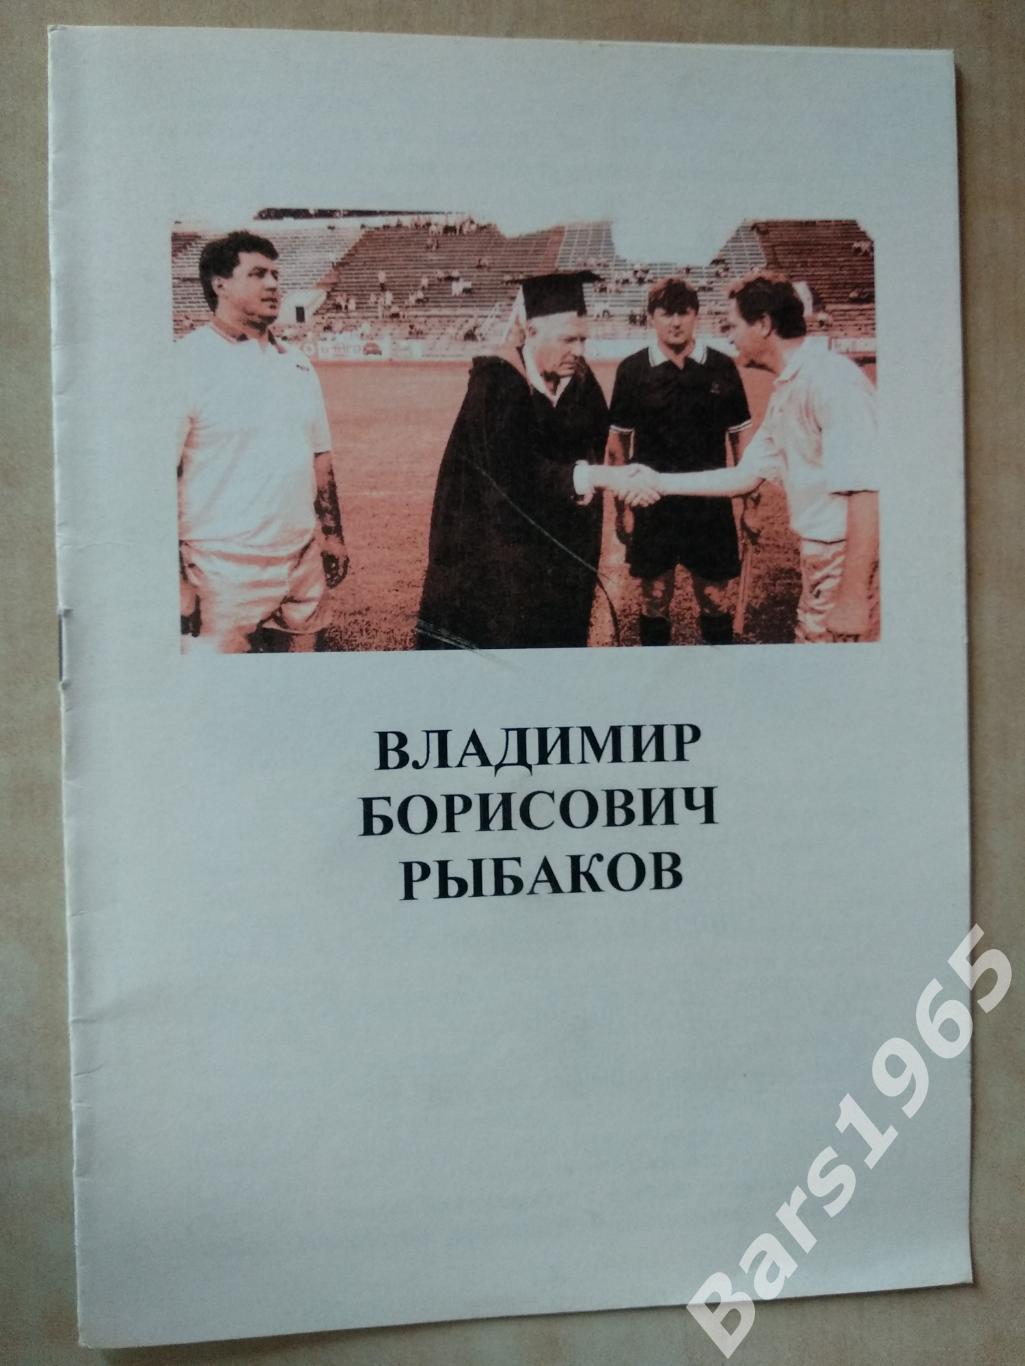 Легенда ставропольского футбола Владимир Борисович Рыбаков